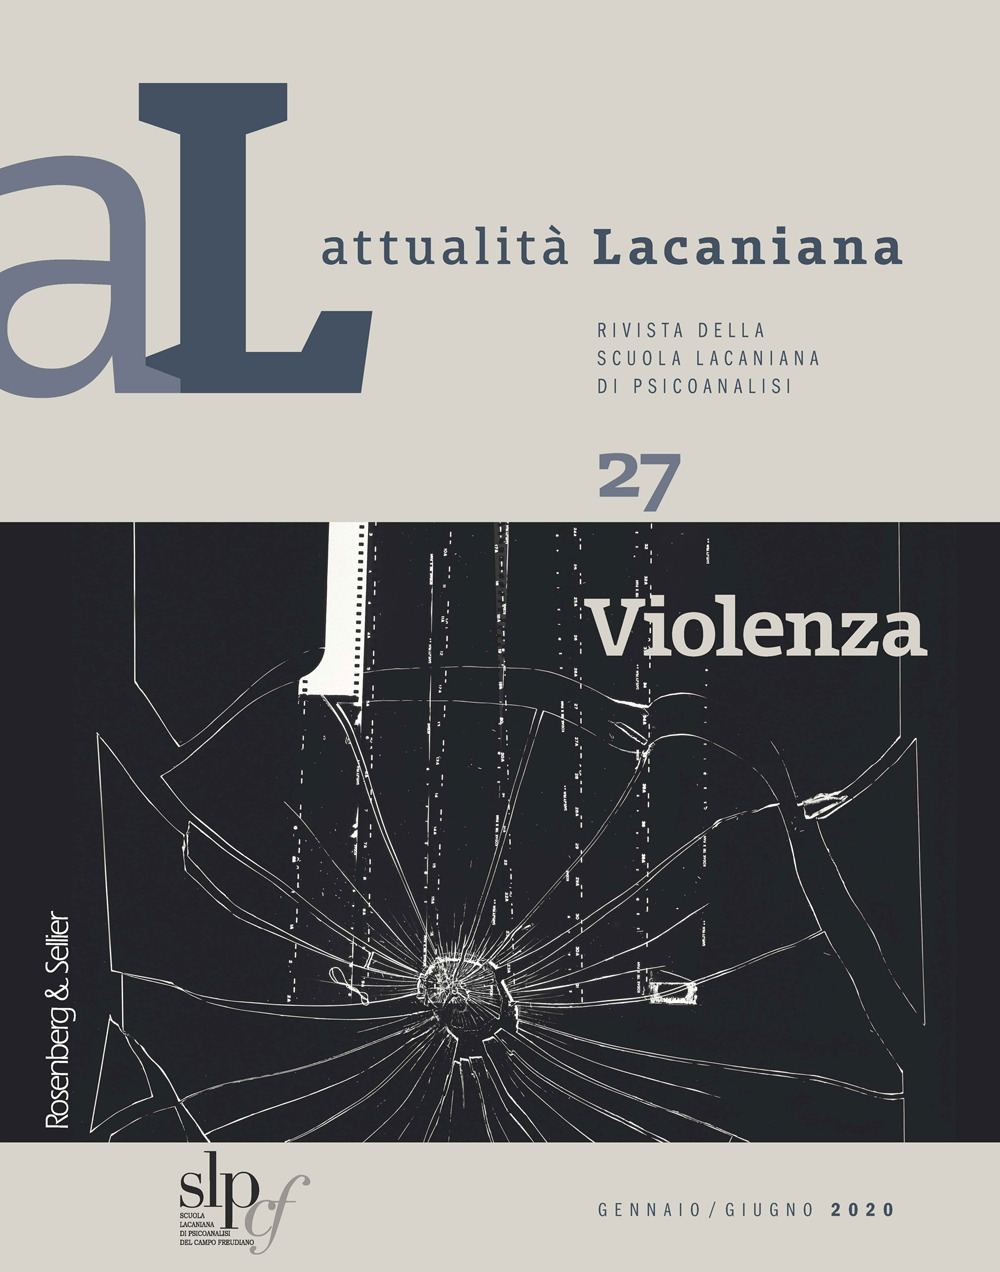 Attualità lacaniana. Rivista della Scuola Lacaniana di Psicoanalisi. Vol. 27: Violenza